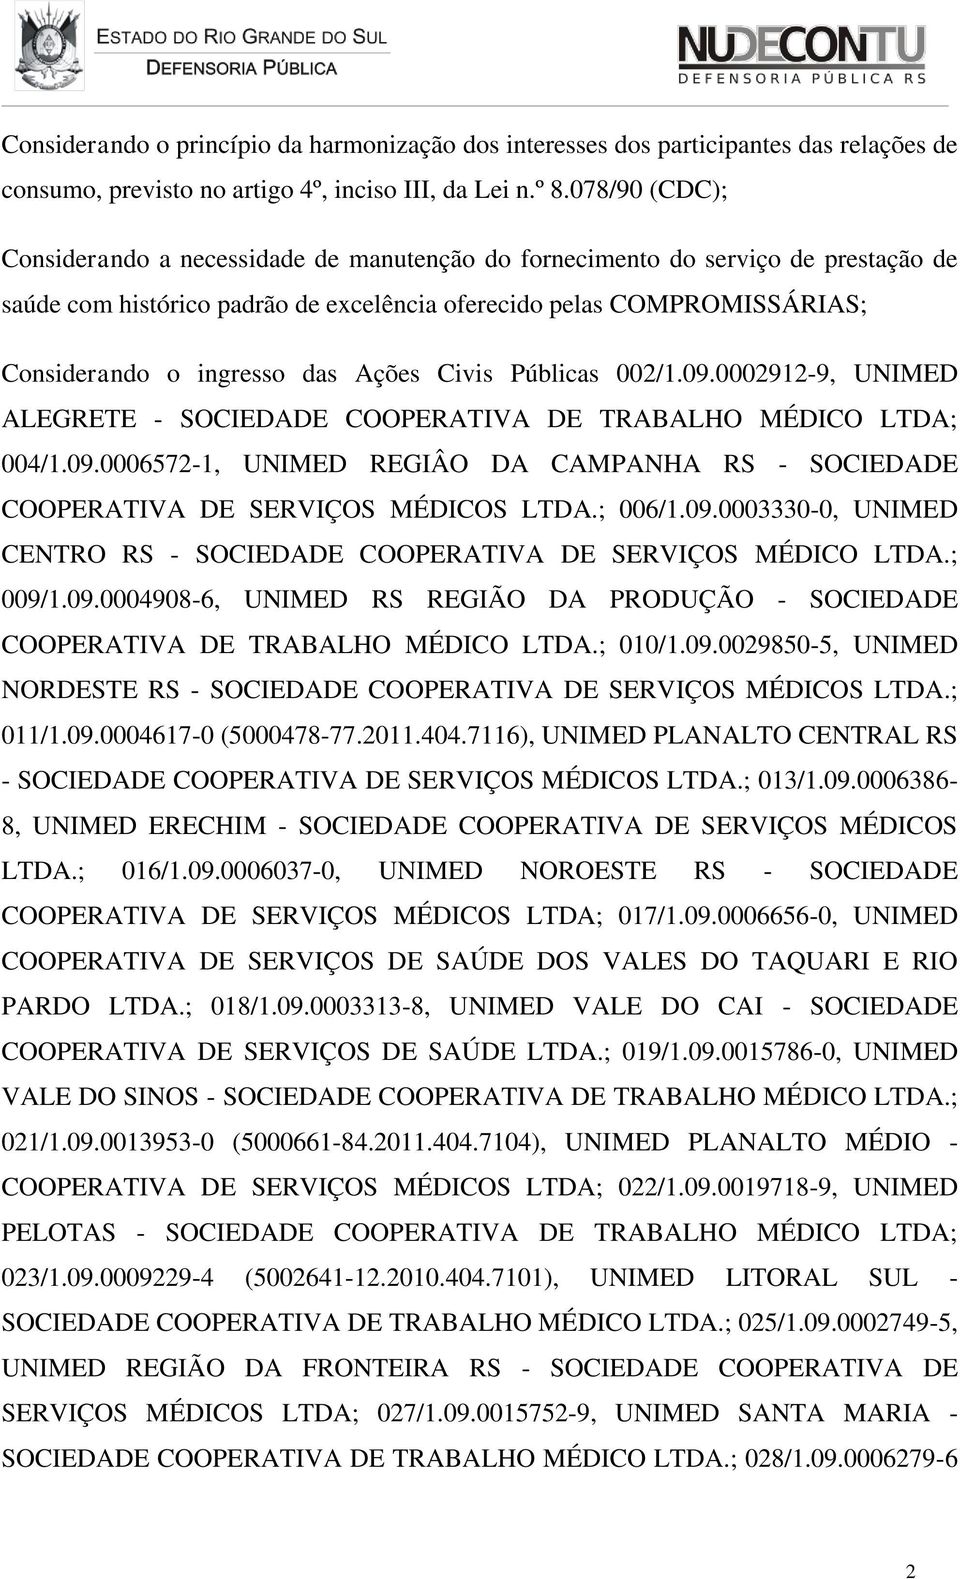 Ações Civis Públicas 002/1.09.0002912-9, UNIMED ALEGRETE - SOCIEDADE COOPERATIVA DE TRABALHO MÉDICO LTDA; 004/1.09.0006572-1, UNIMED REGIÂO DA CAMPANHA RS - SOCIEDADE COOPERATIVA DE SERVIÇOS MÉDICOS LTDA.